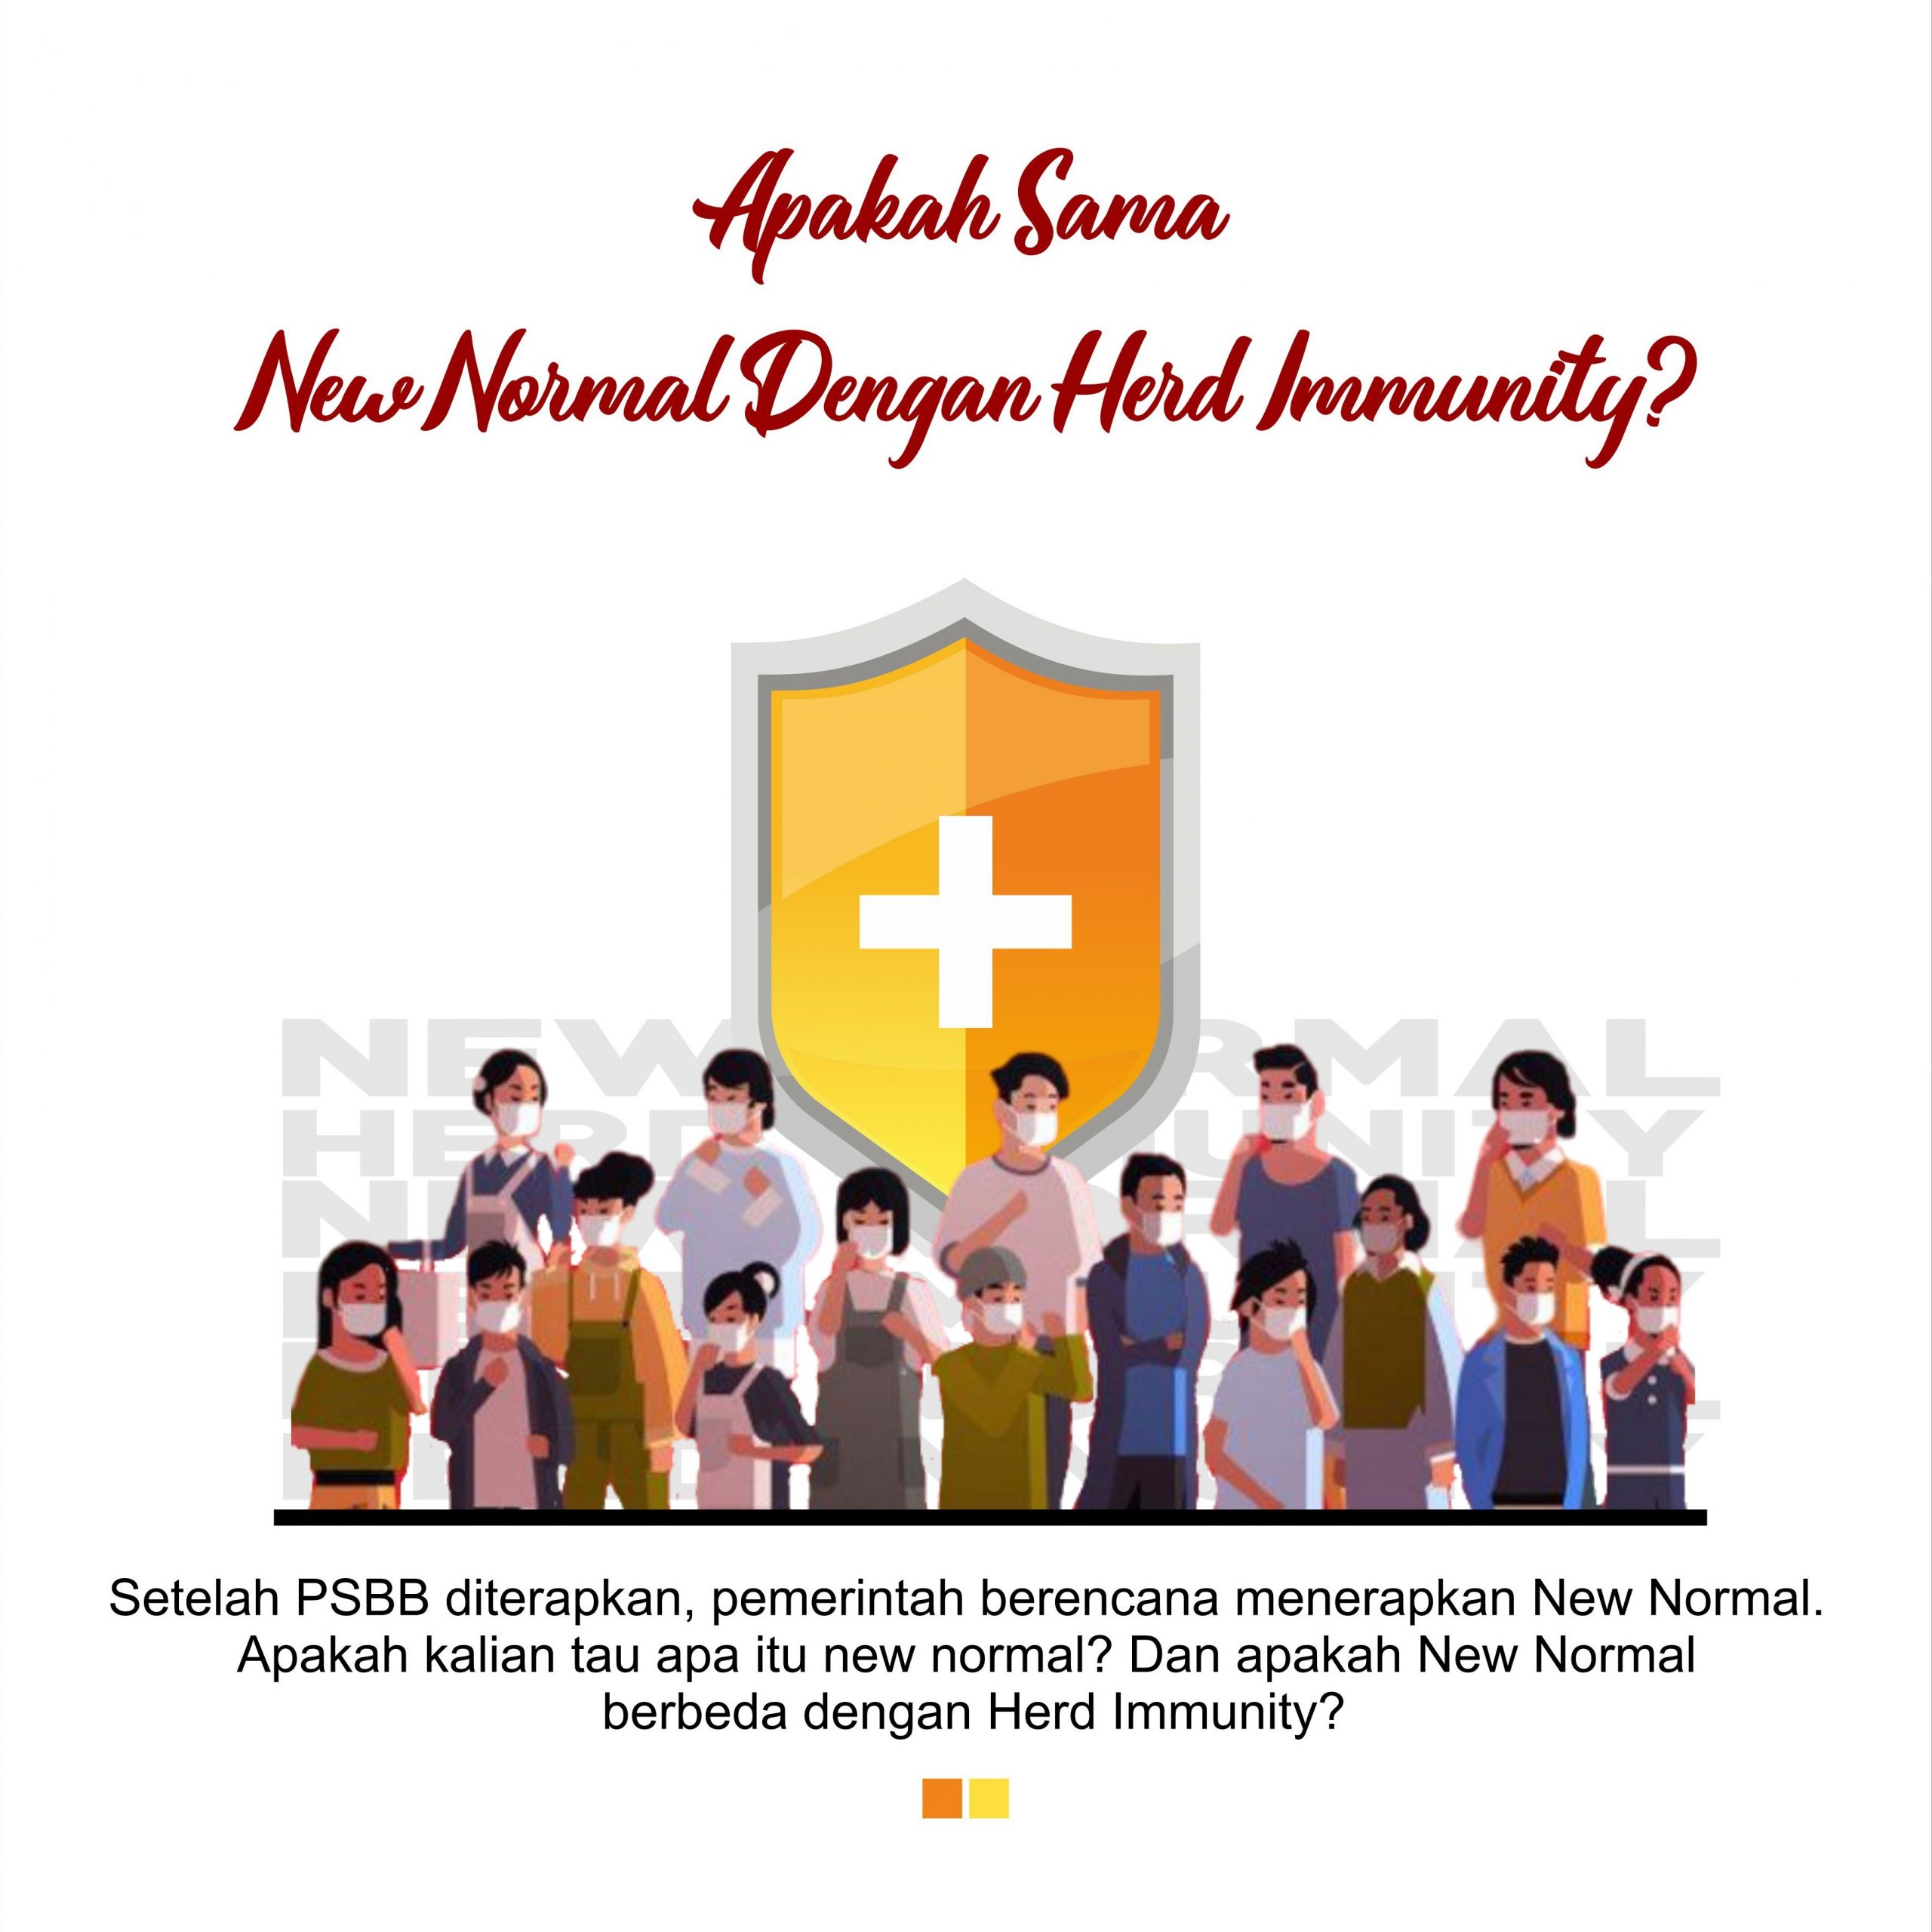 New Normal vs Herd Immunity